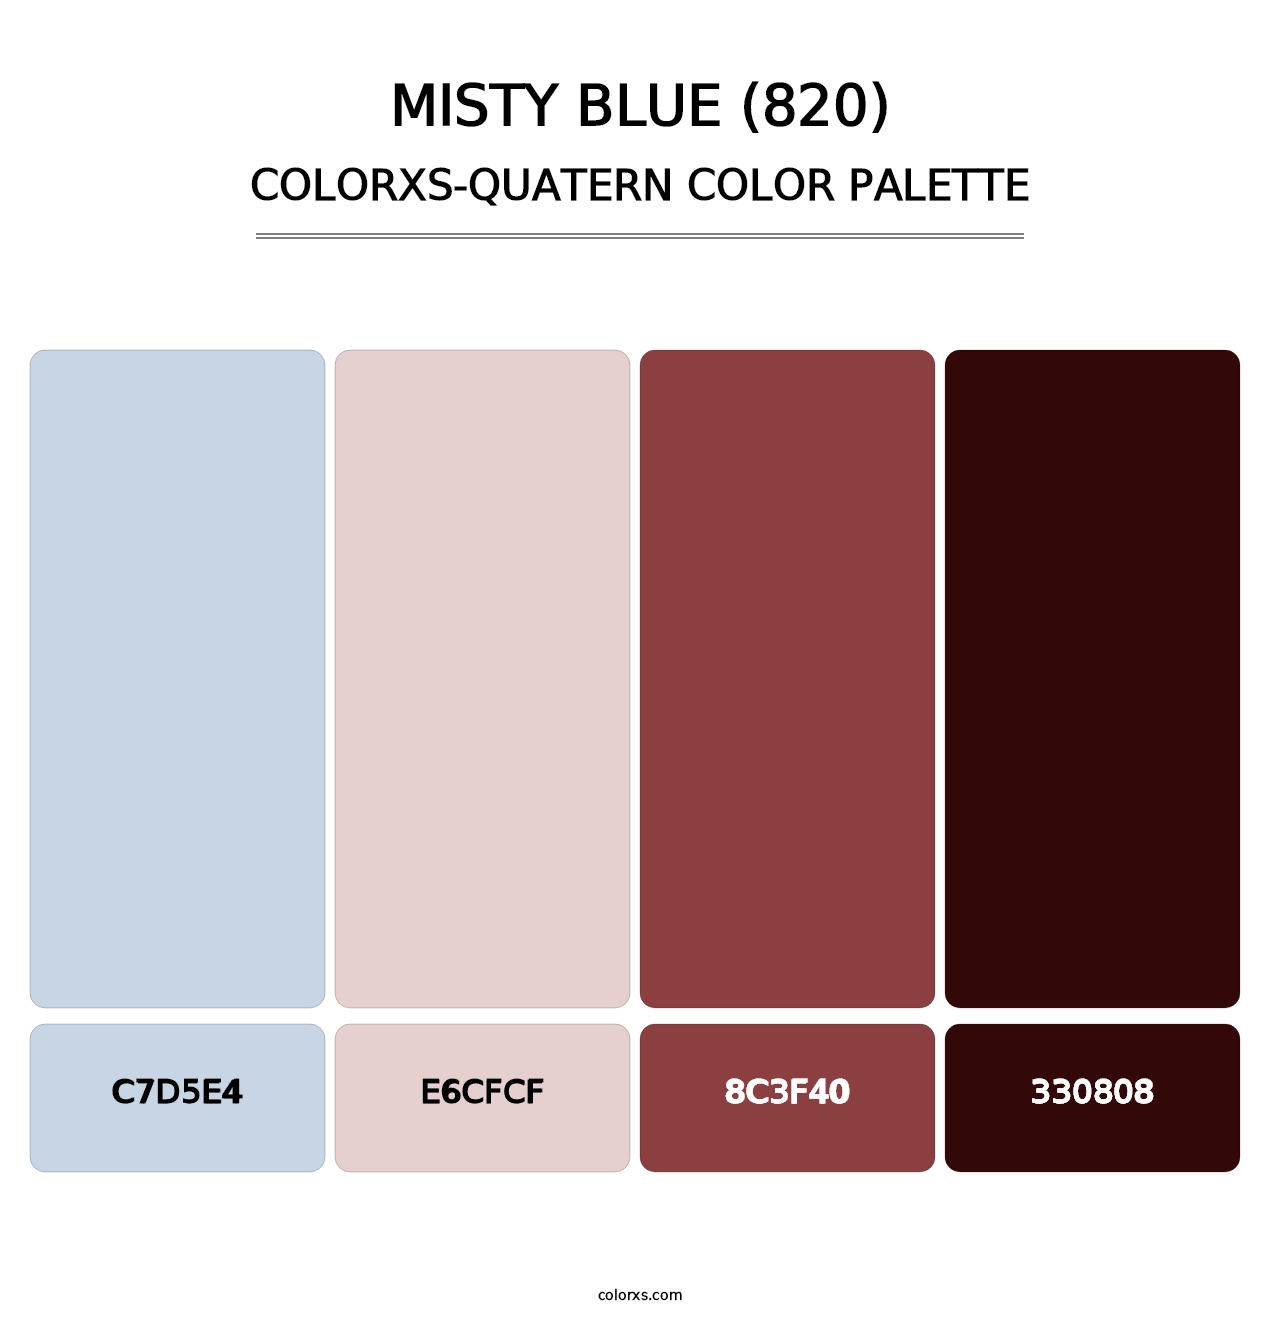 Misty Blue (820) - Colorxs Quatern Palette